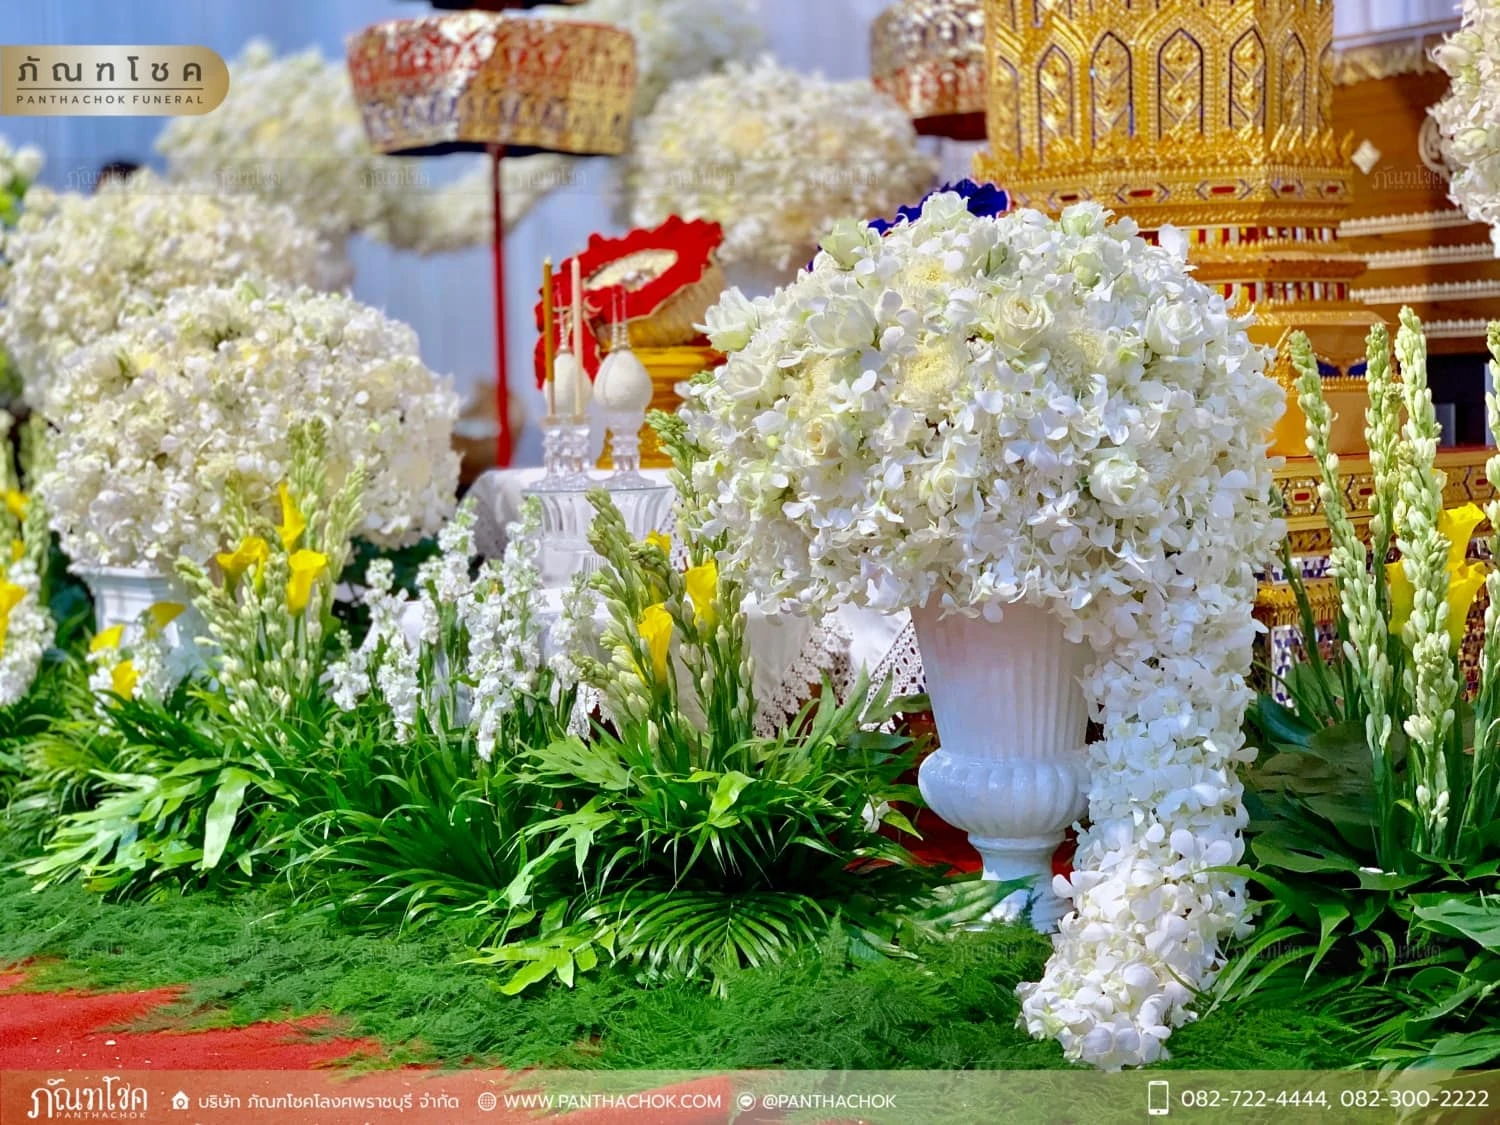 รับจัดดอกไม้ในงานศพที่ราชบุรี